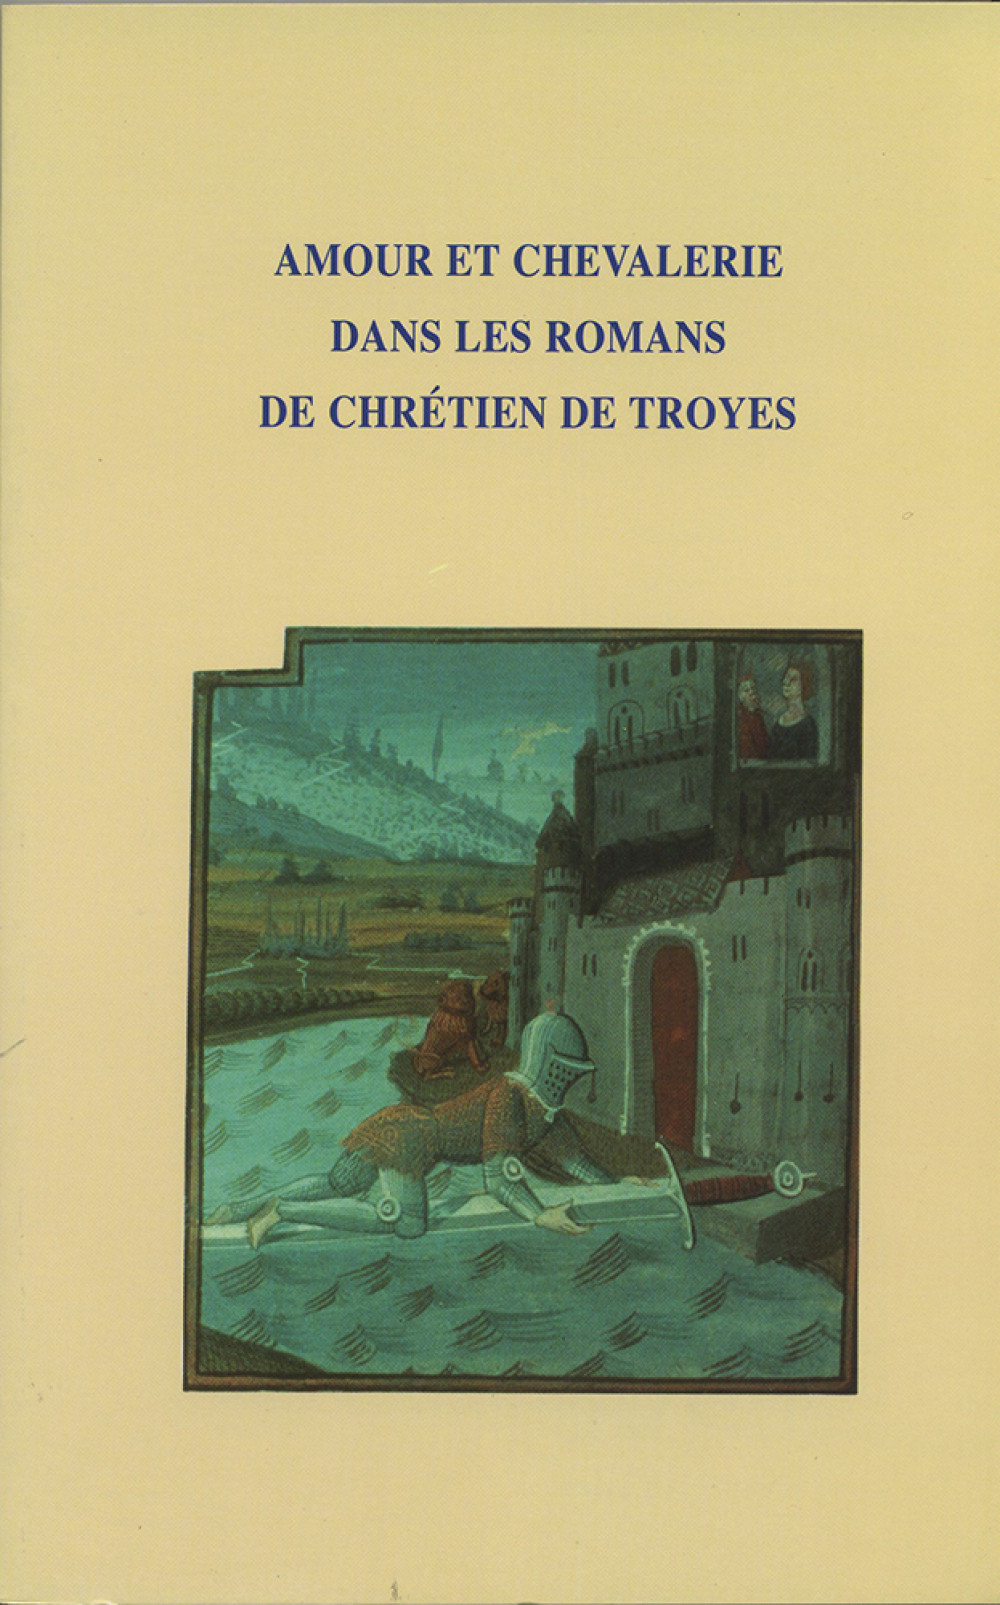 Amour et chevalerie dans les romans de Chrétien de Troyes